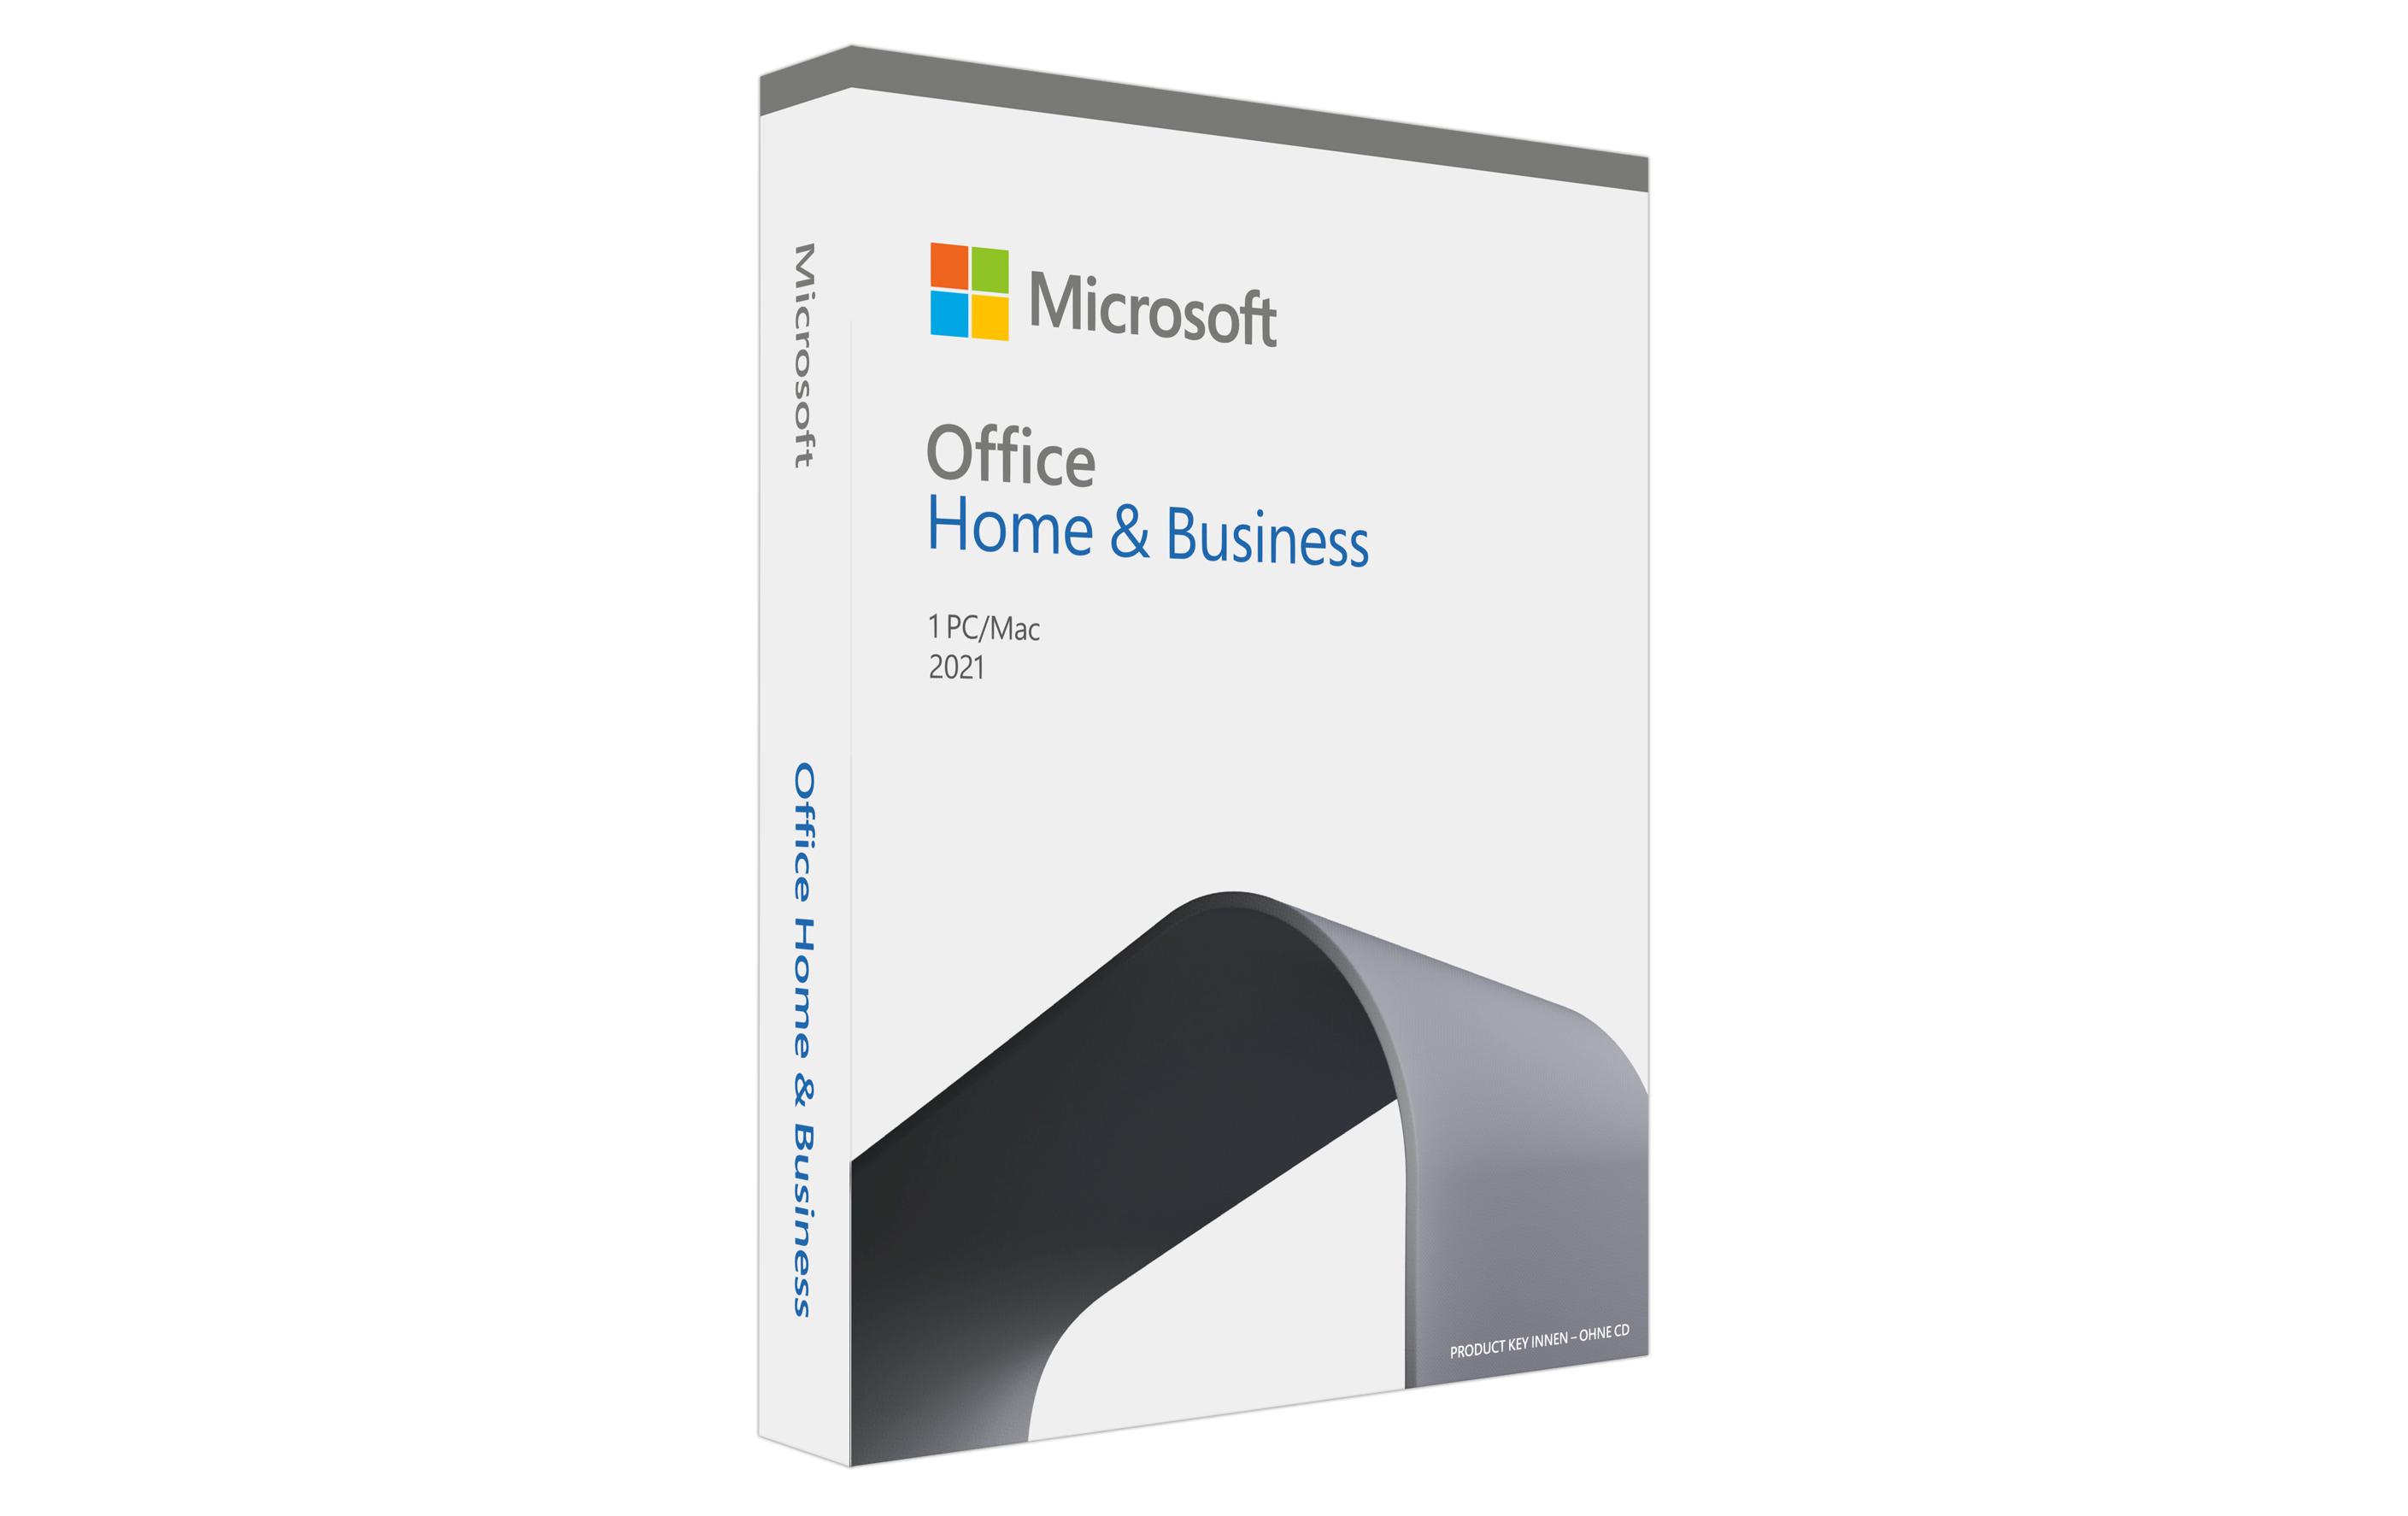 Microsoft Office 2021 Home & Business, Vollversion, französisch, PKC, 1 PC